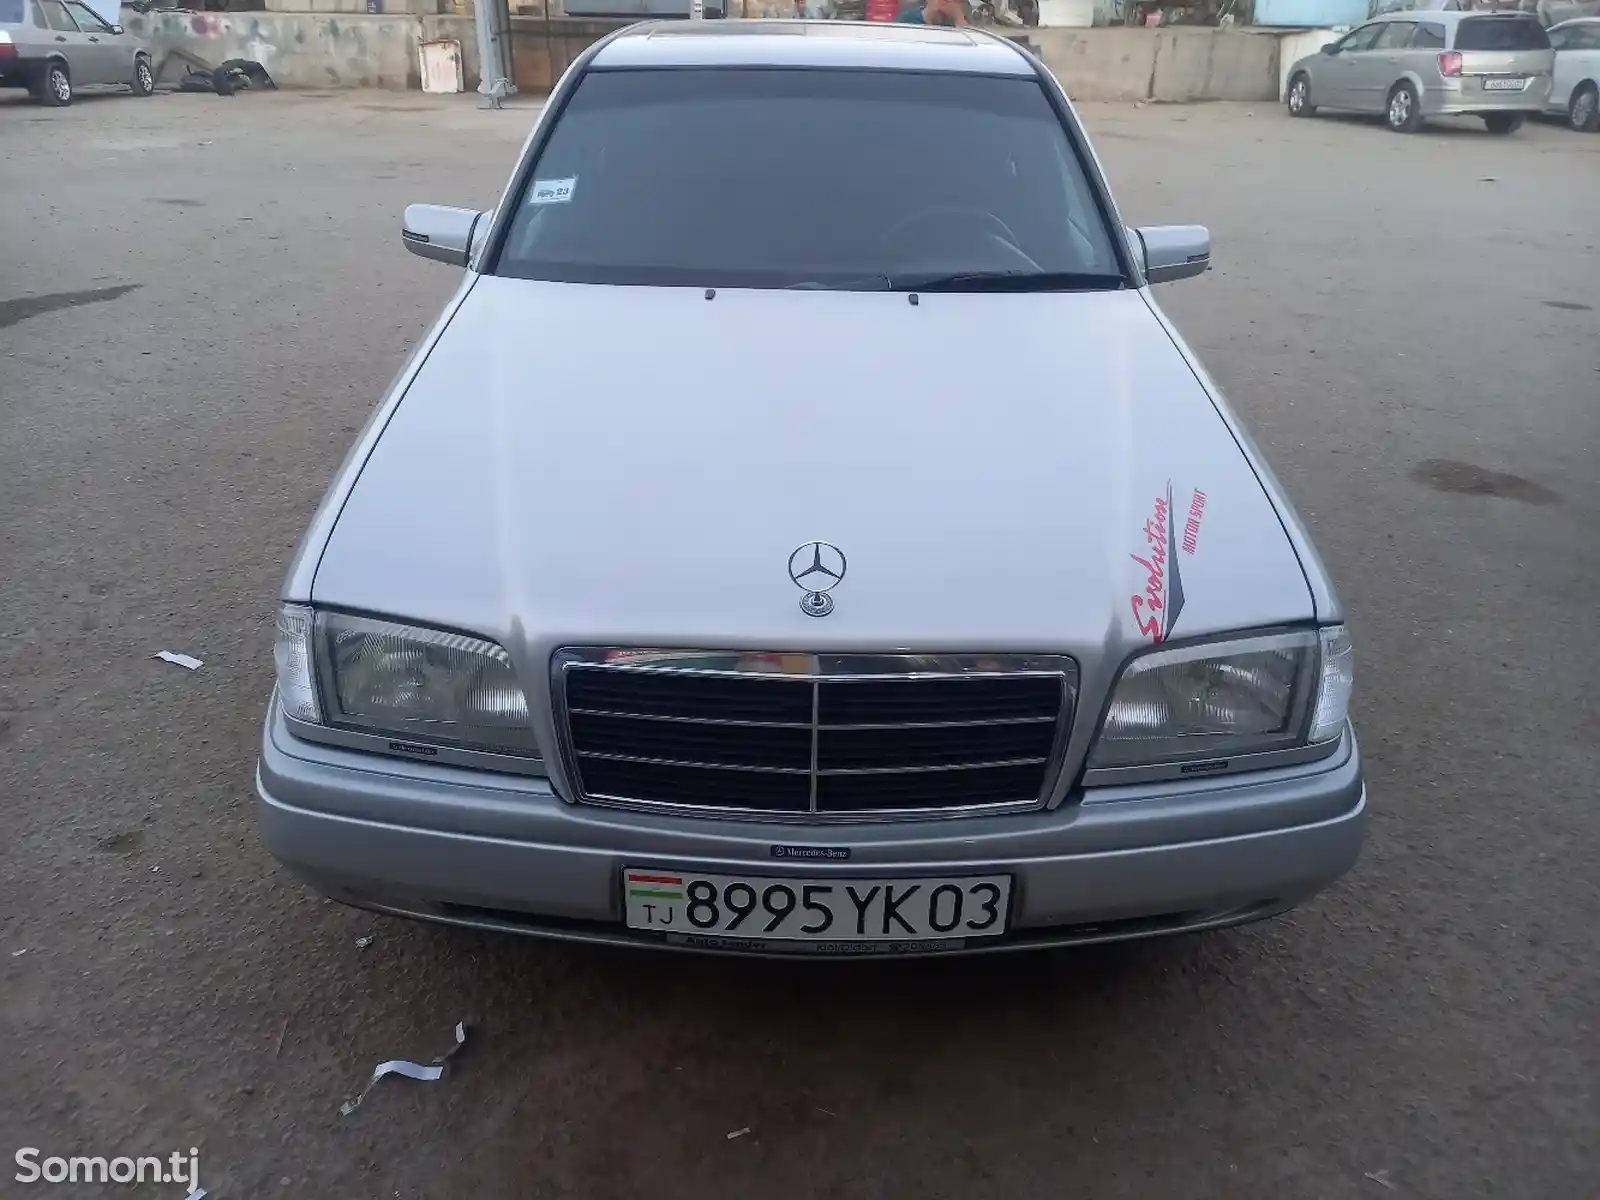 Mercedes-Benz C class, 1995-15